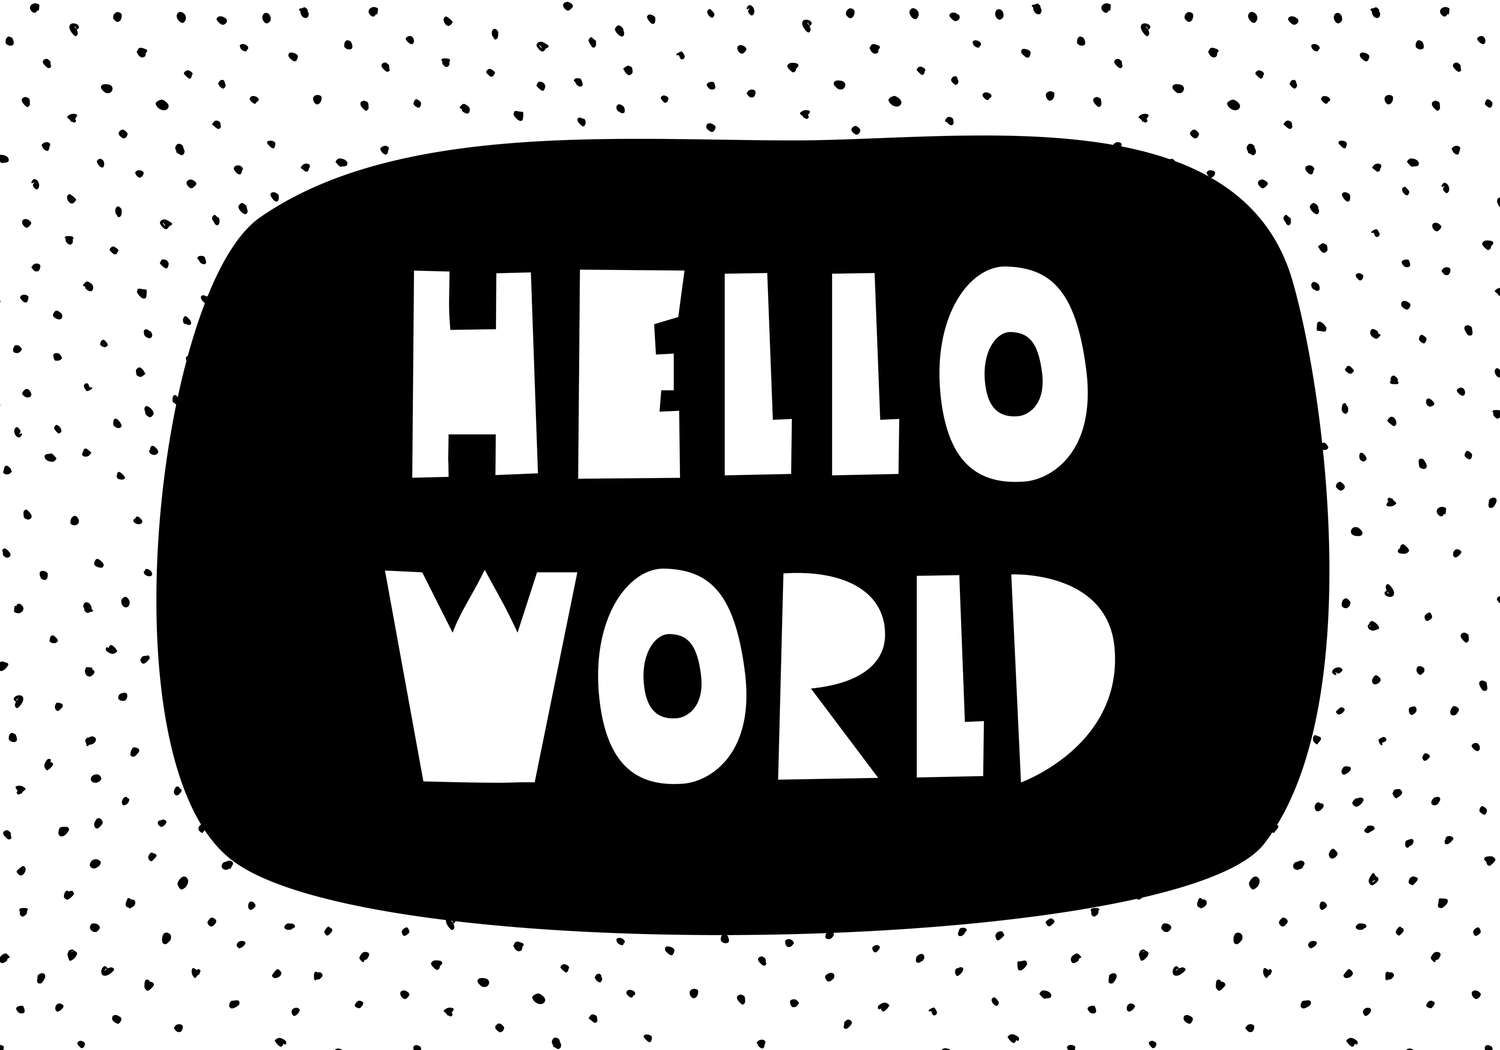             Digital behang voor kinderkamer met "Hello World" letters - structuurvlies
        